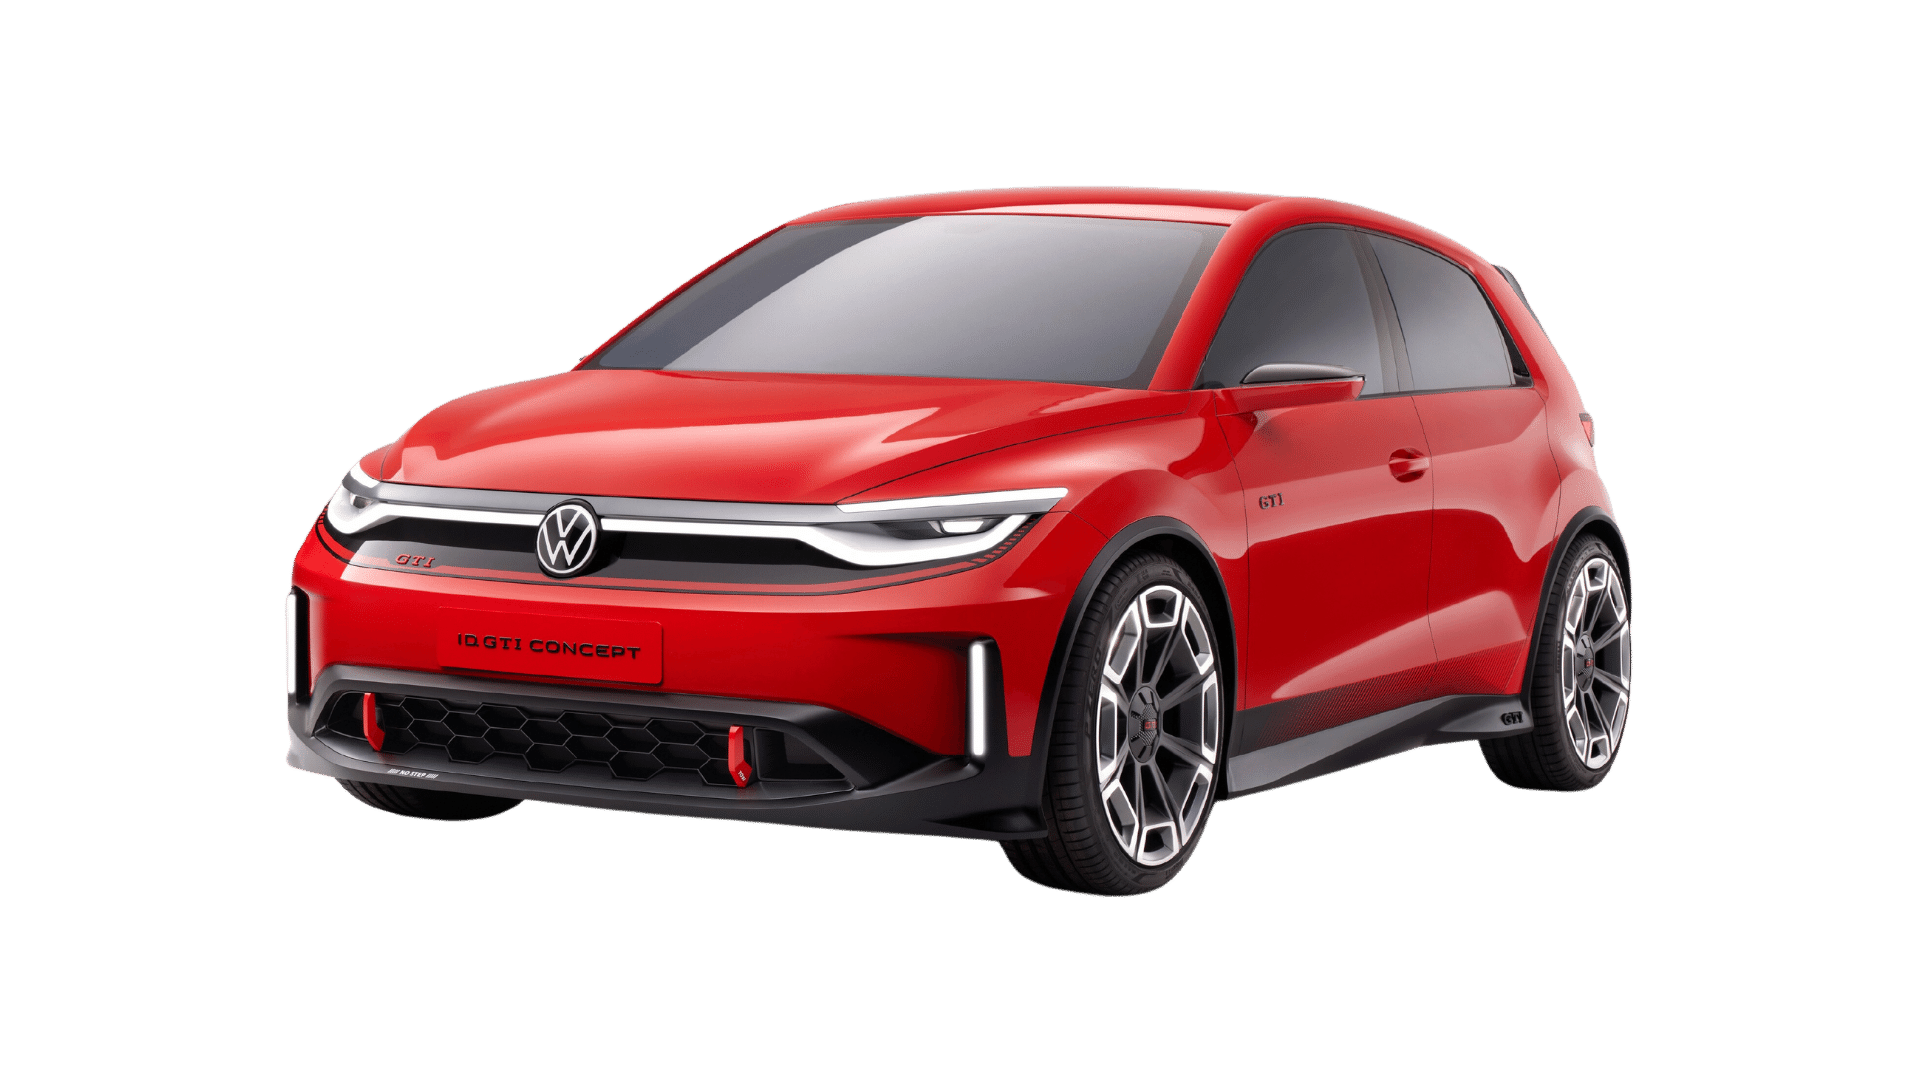 Charging your Volkswagen ID GTI Concept